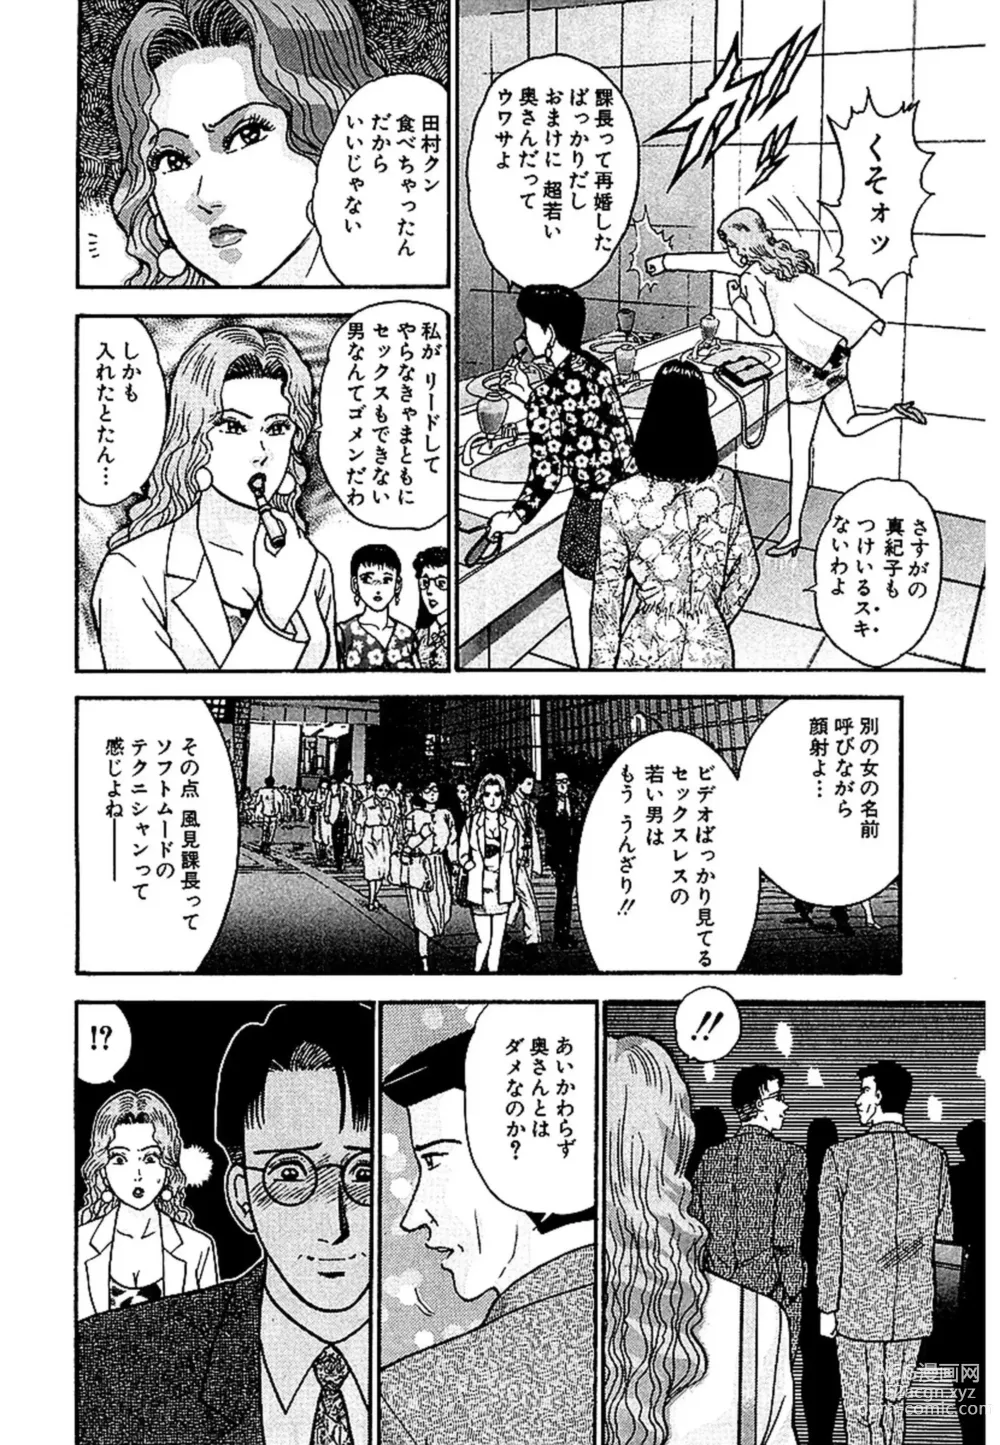 Page 7 of manga Sekkusuresu Shinsō-ban 1